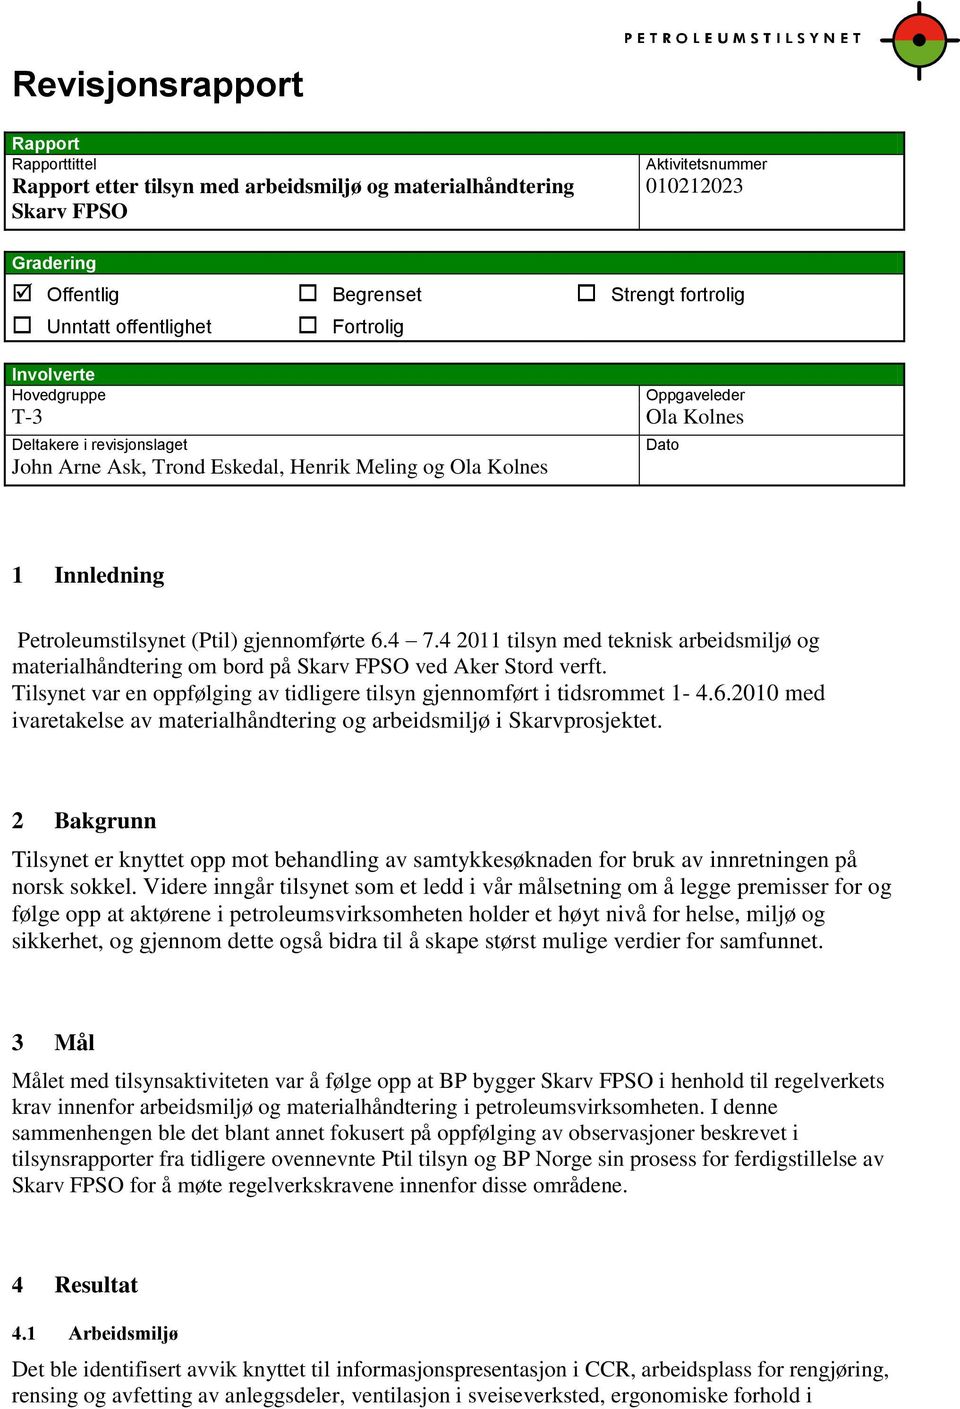 gjennomførte 6.4 7.4 2011 tilsyn med teknisk arbeidsmiljø og materialhåndtering om bord på Skarv FPSO ved Aker Stord verft. Tilsynet var en oppfølging av tidligere tilsyn gjennomført i tidsrommet 1-4.